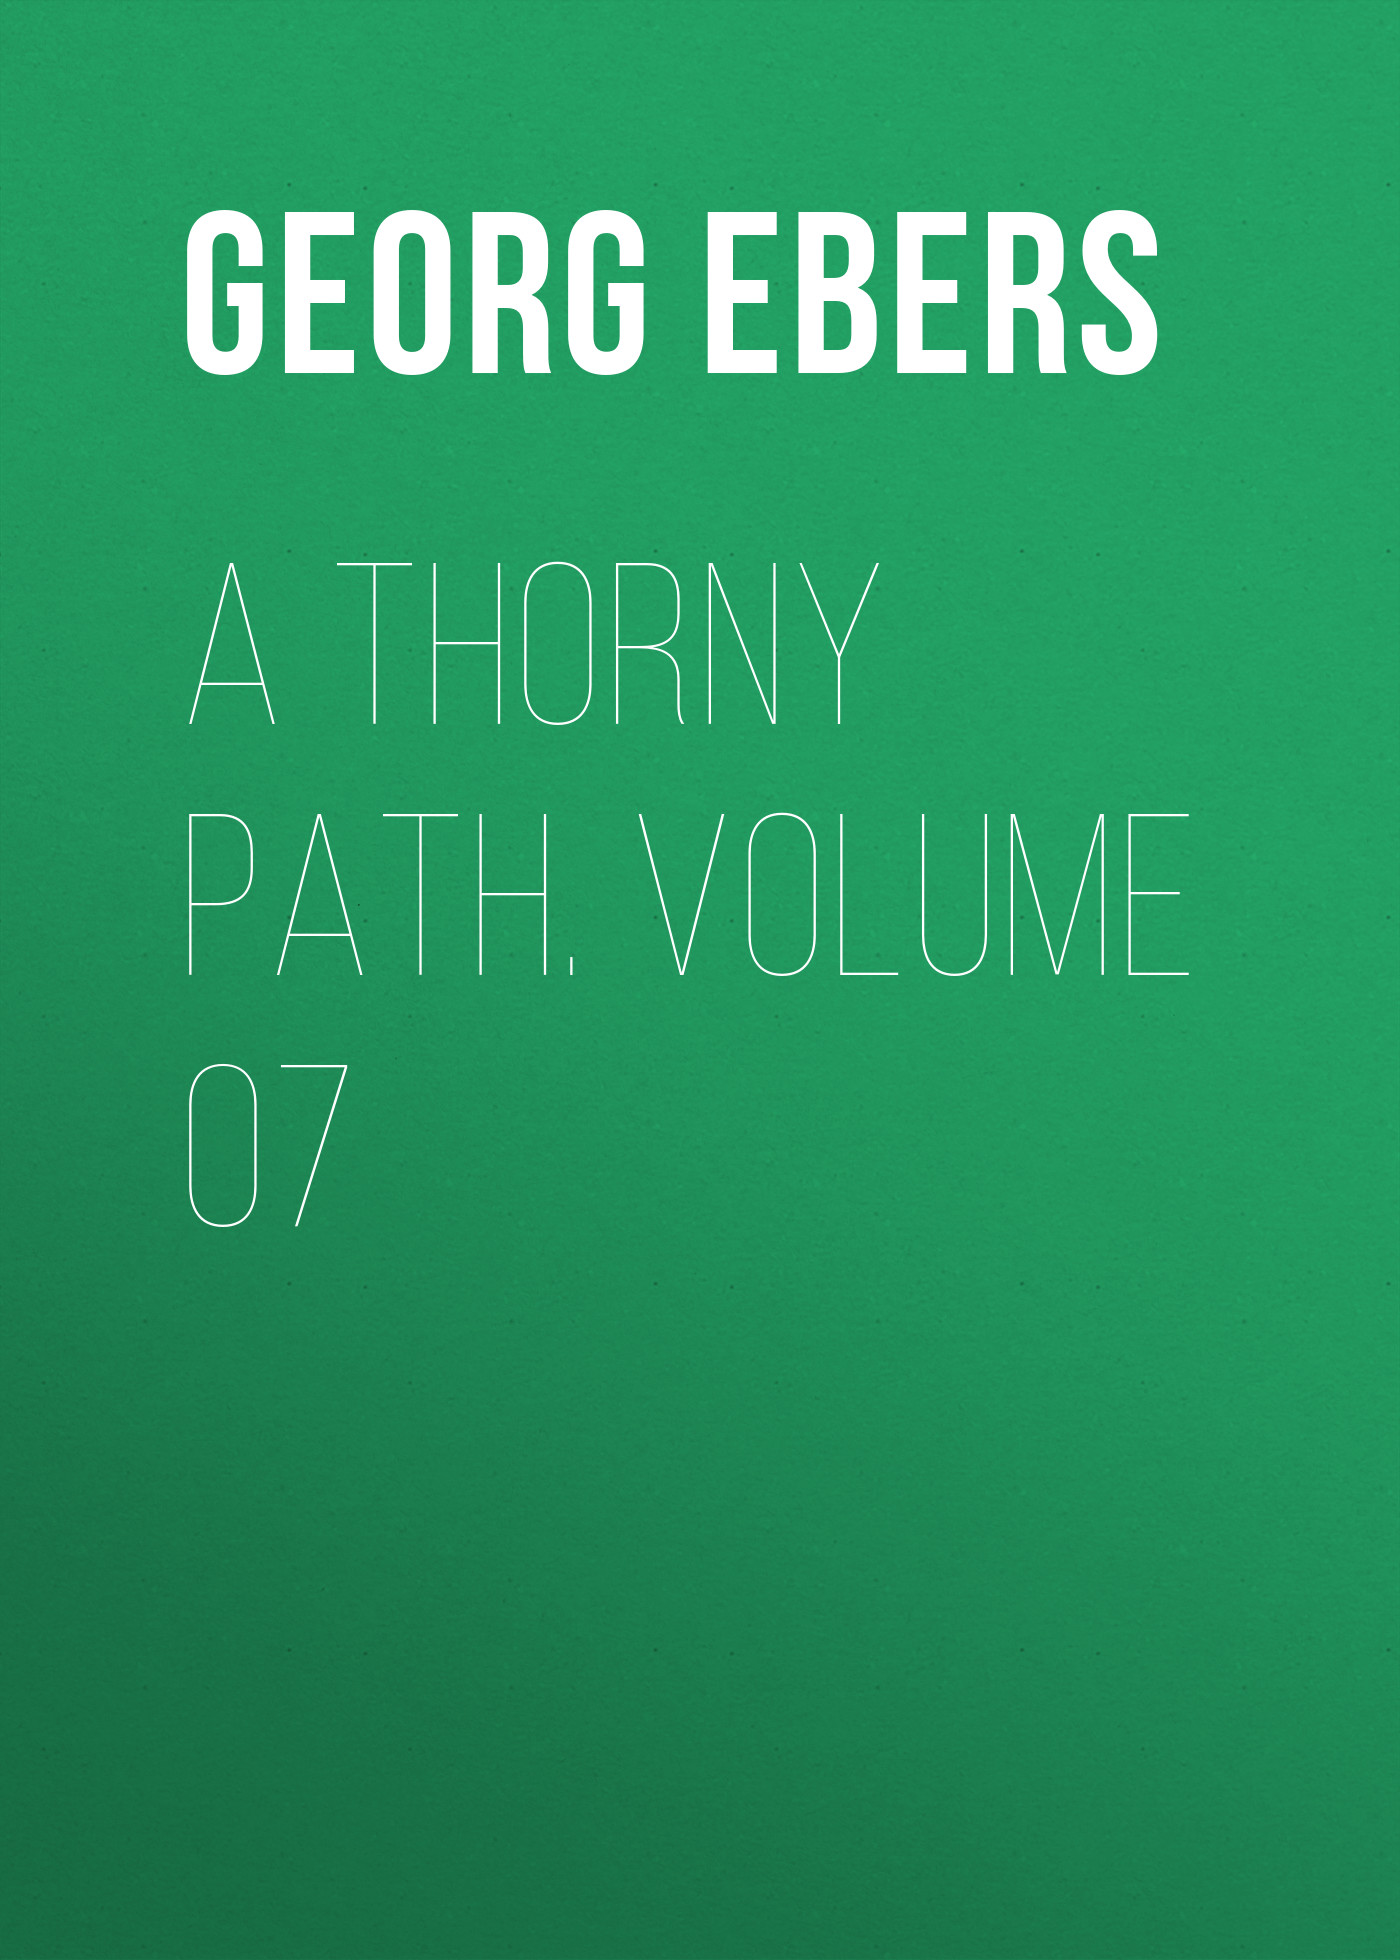 Книга A Thorny Path. Volume 07 из серии , созданная Georg Ebers, может относится к жанру Зарубежная классика, Зарубежная старинная литература. Стоимость электронной книги A Thorny Path. Volume 07 с идентификатором 42628099 составляет 0 руб.